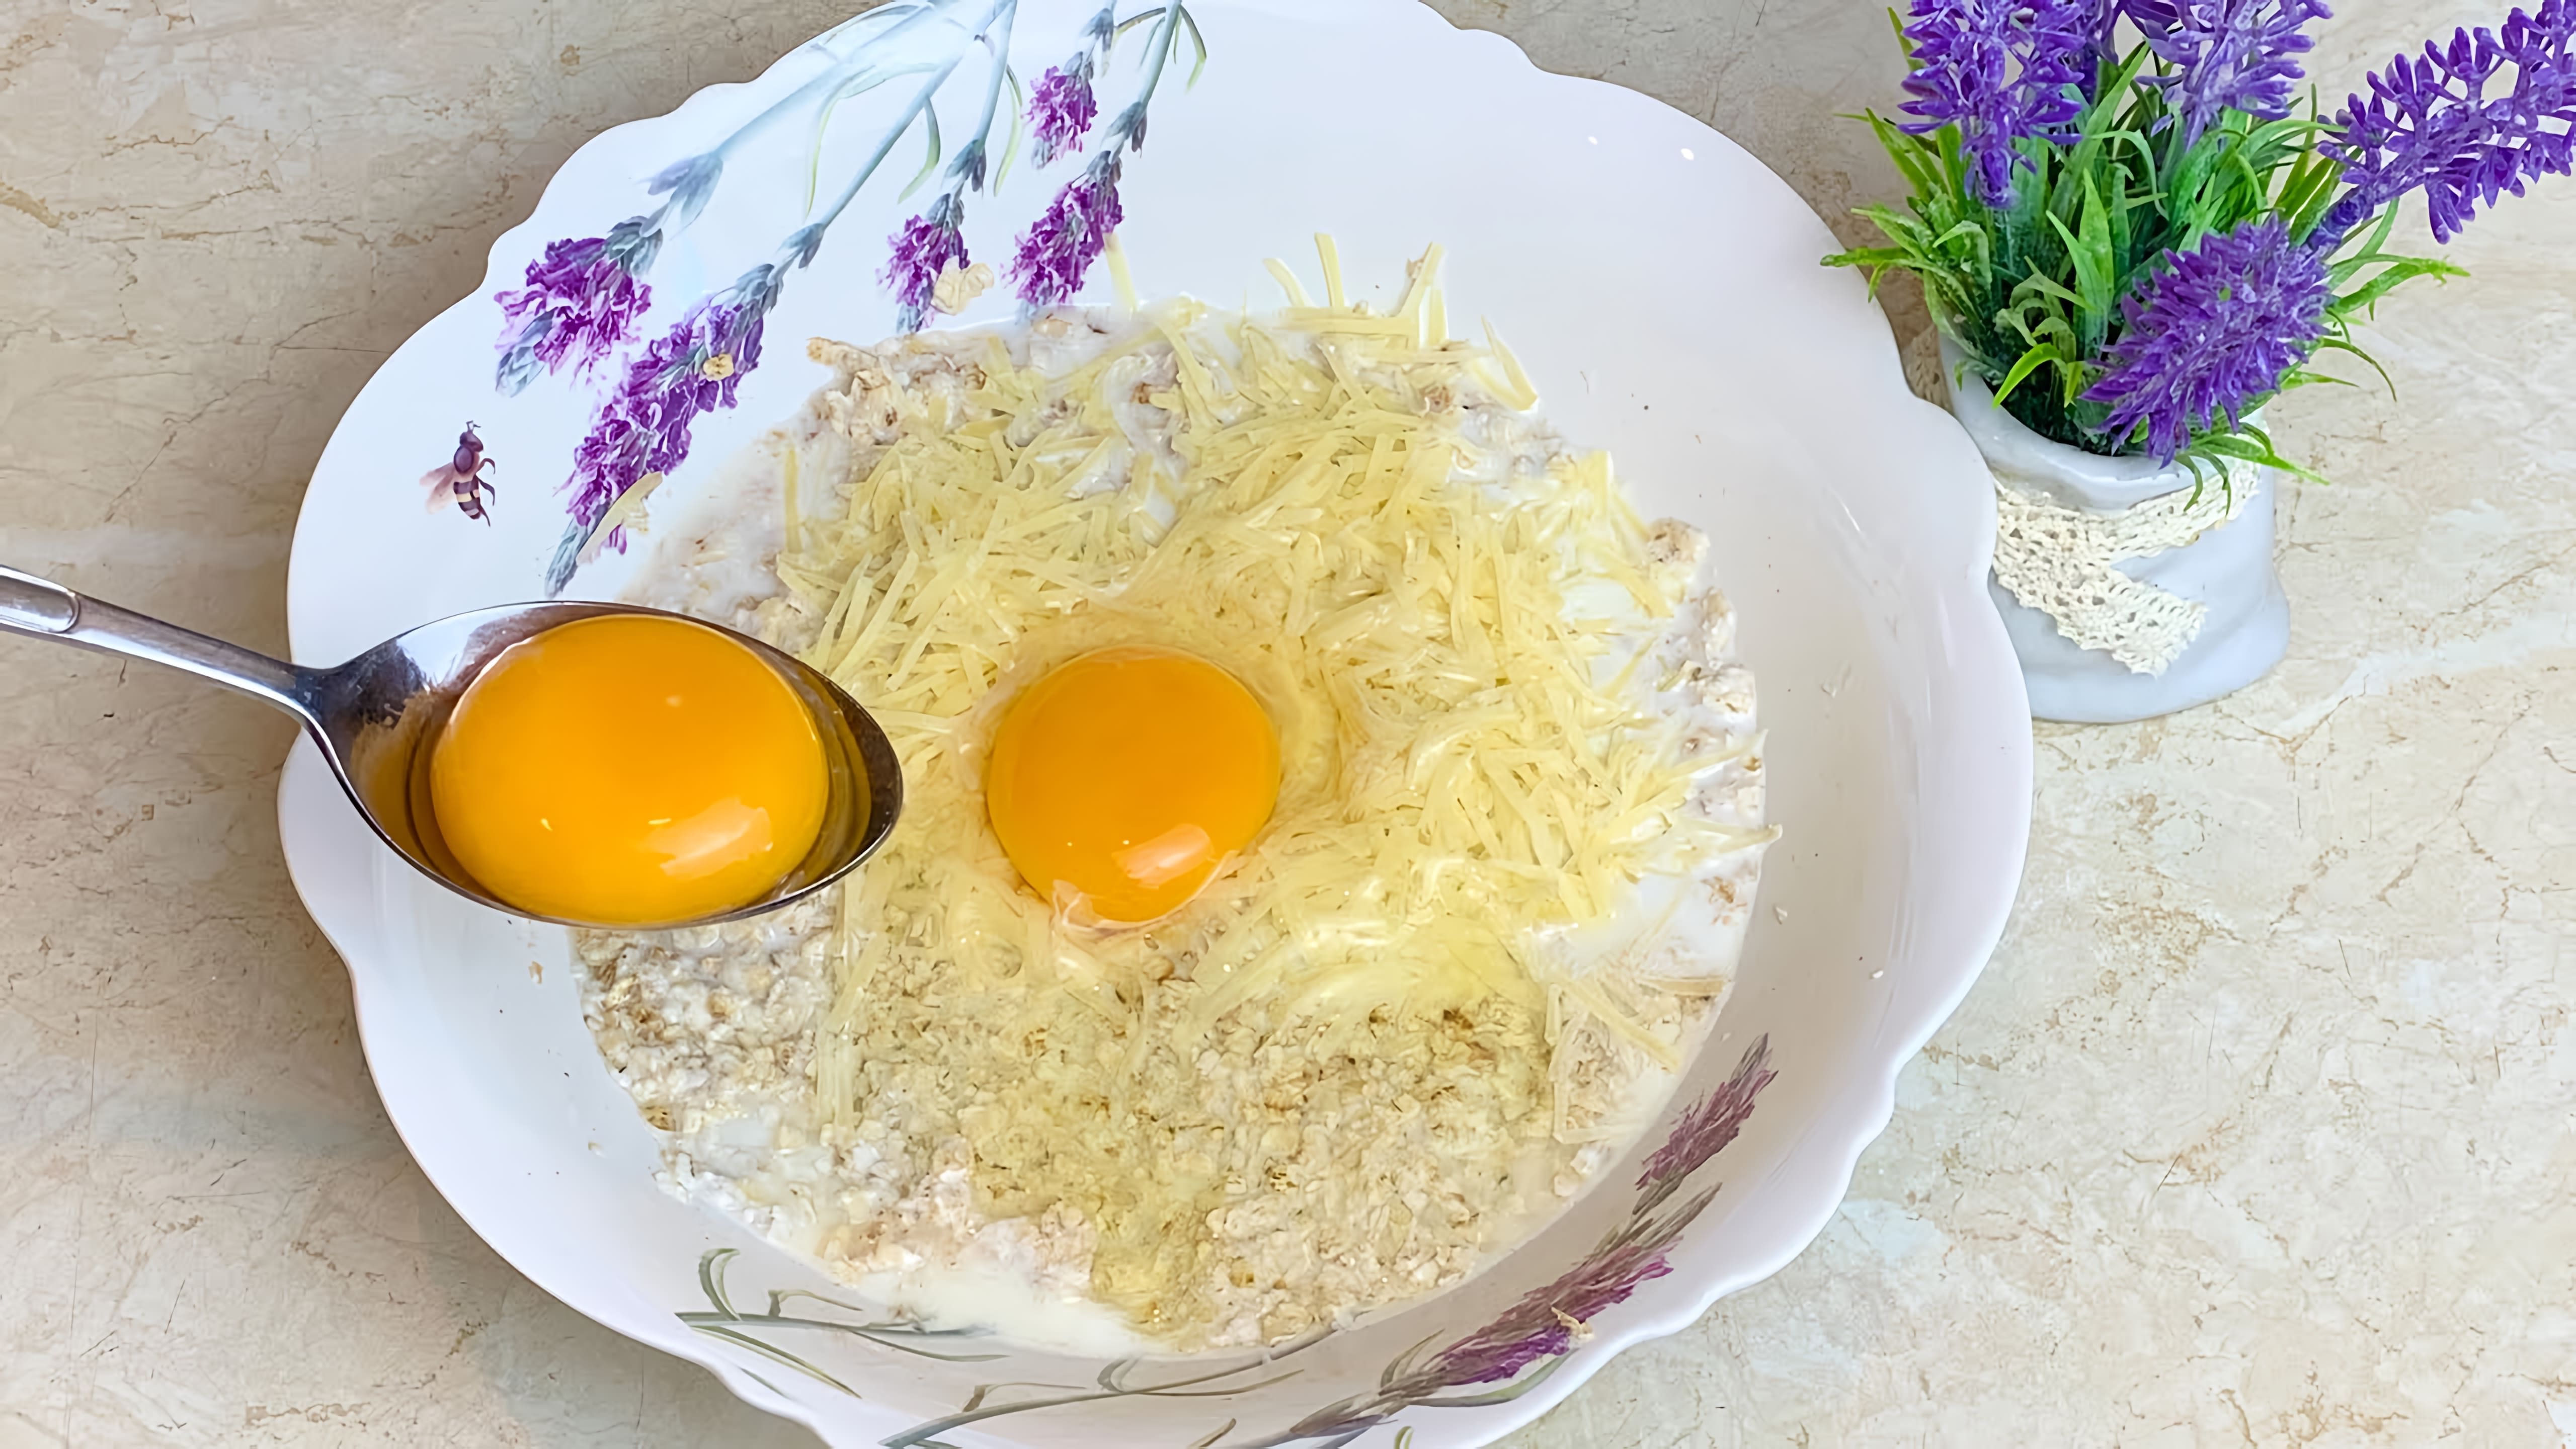 В этом видео демонстрируется рецепт приготовления здоровой и дешевой еды из овсянки и яиц